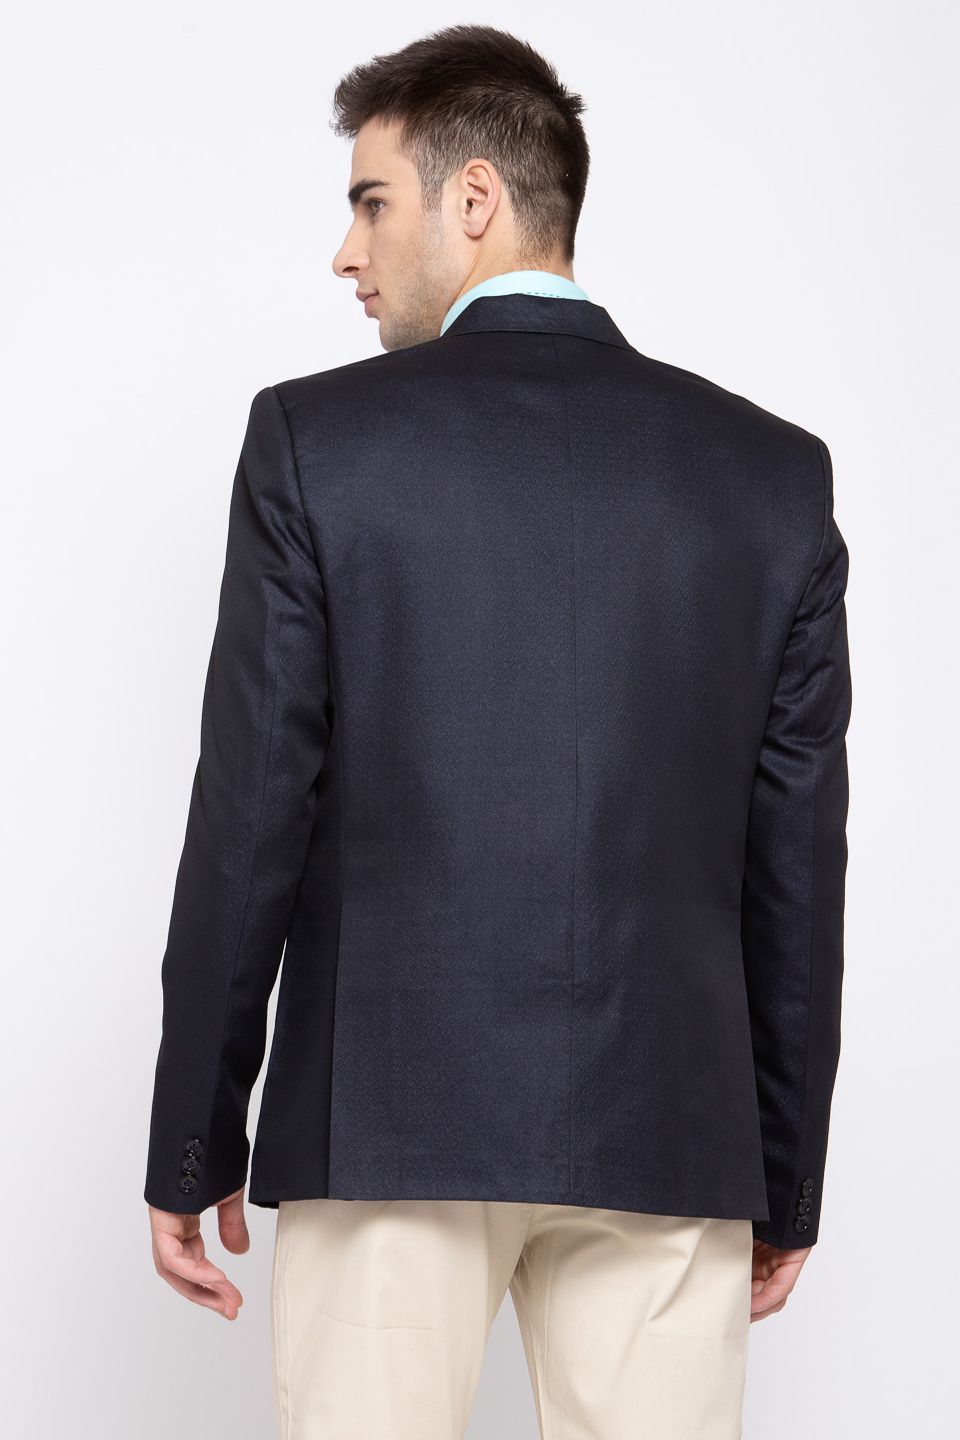 Wintage Men's Poly Blend Formal and Evening Blazer Coat Jacket : Dark Blue